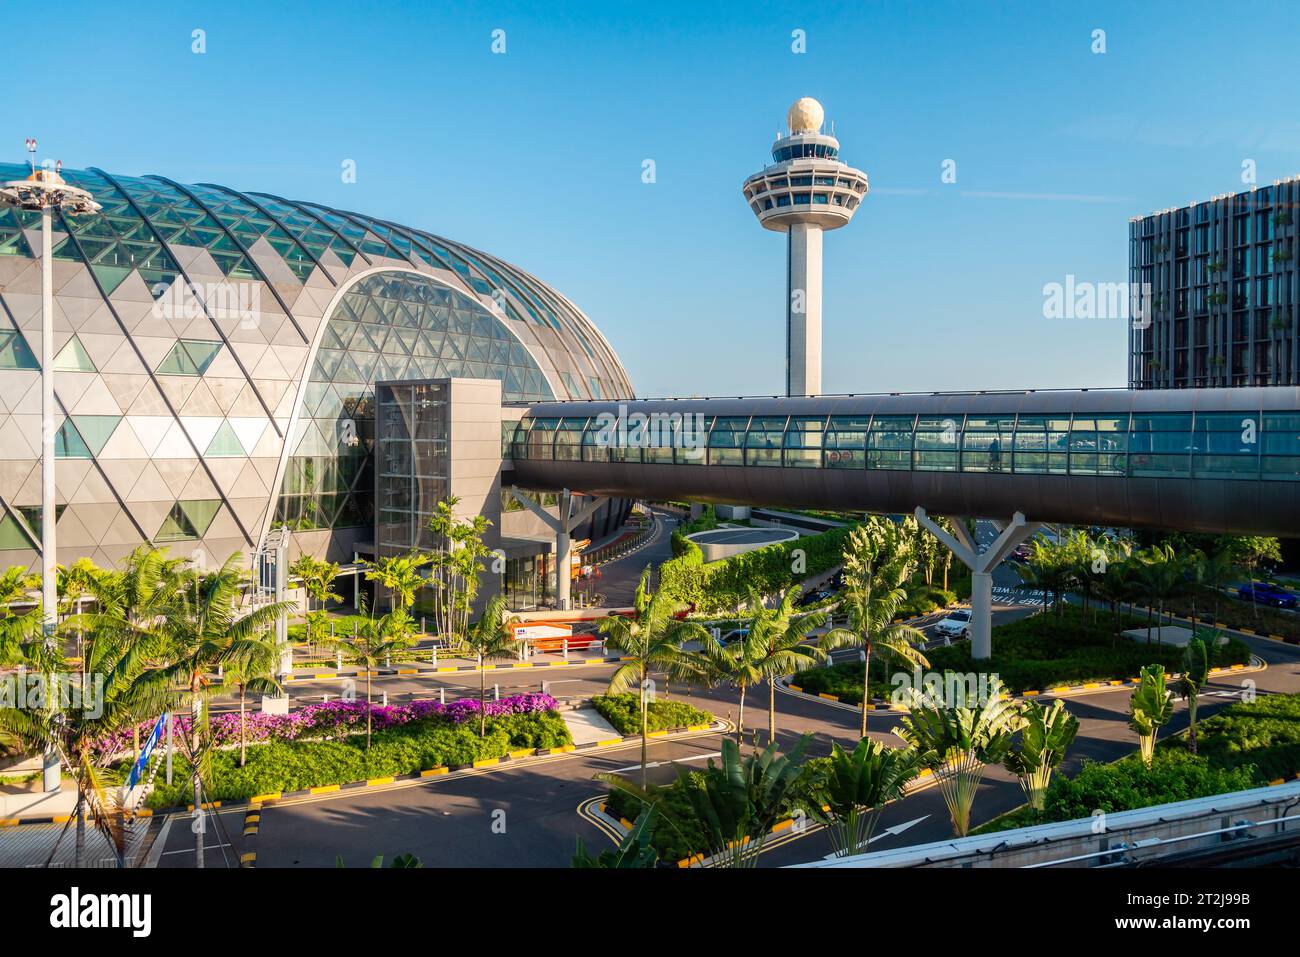 Flughafen Changi, Singapur - 24. Januar 2020: Futuristischer Blick auf den Flughafen Changi mit Brücke zwischen den Terminals bei Sonnenuntergang durch Fenster Stockfoto